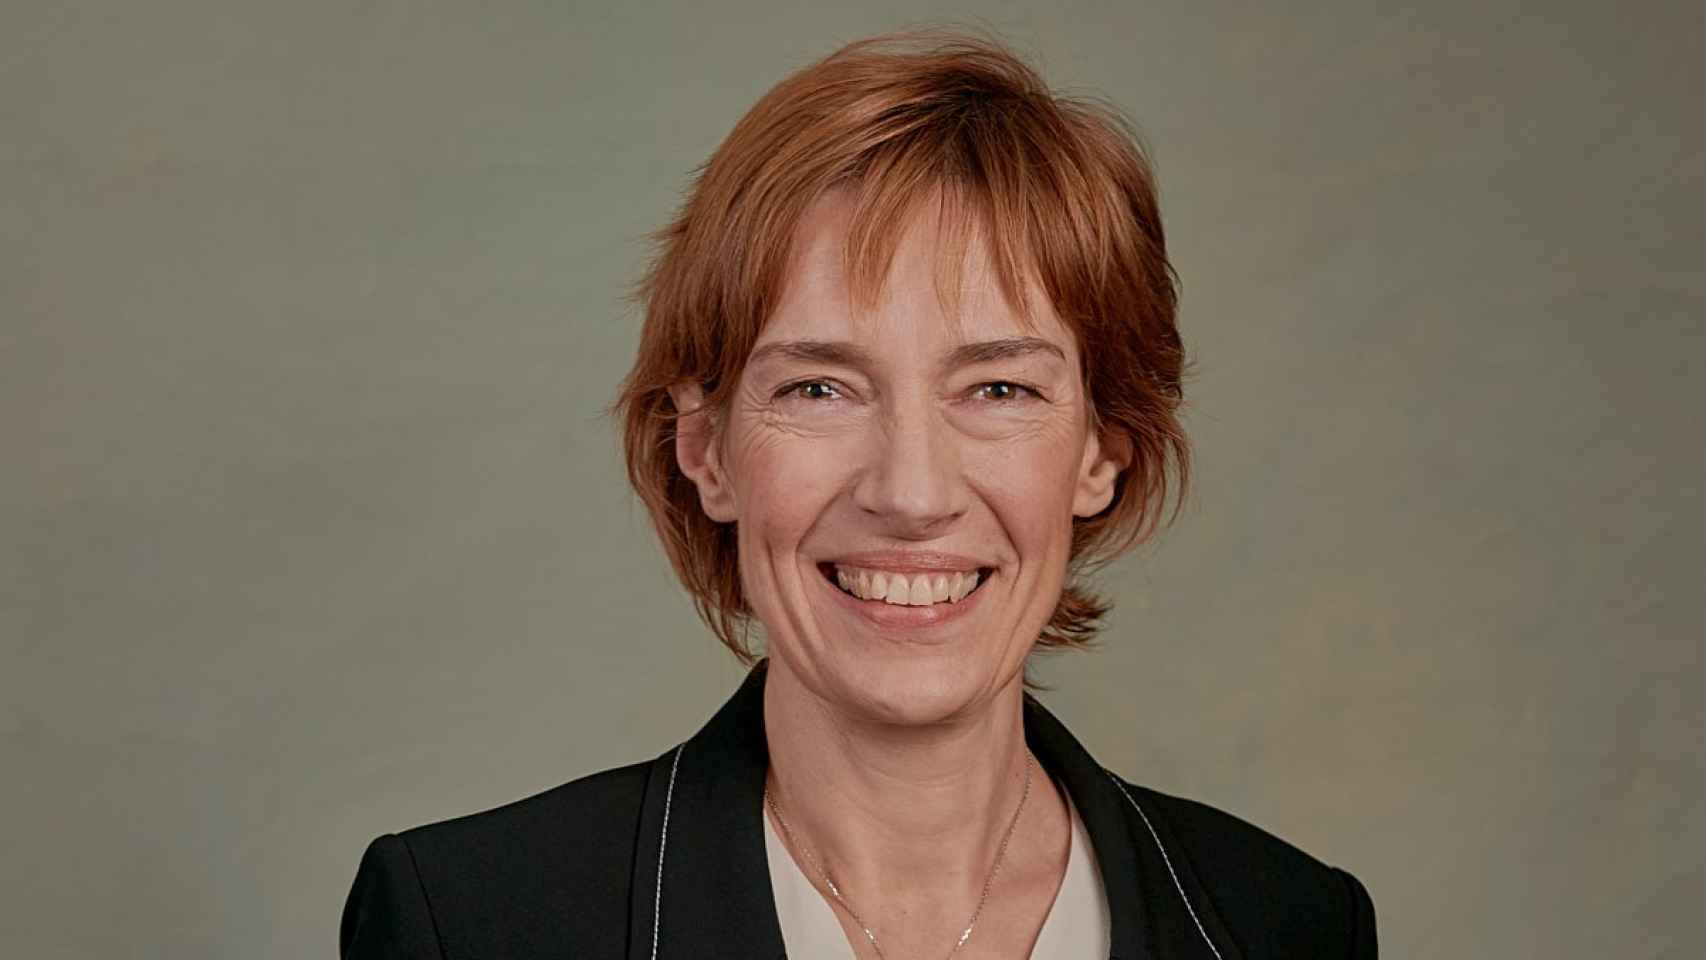 Anne Bouverot, presidenta del consejo de administración de Cellnex